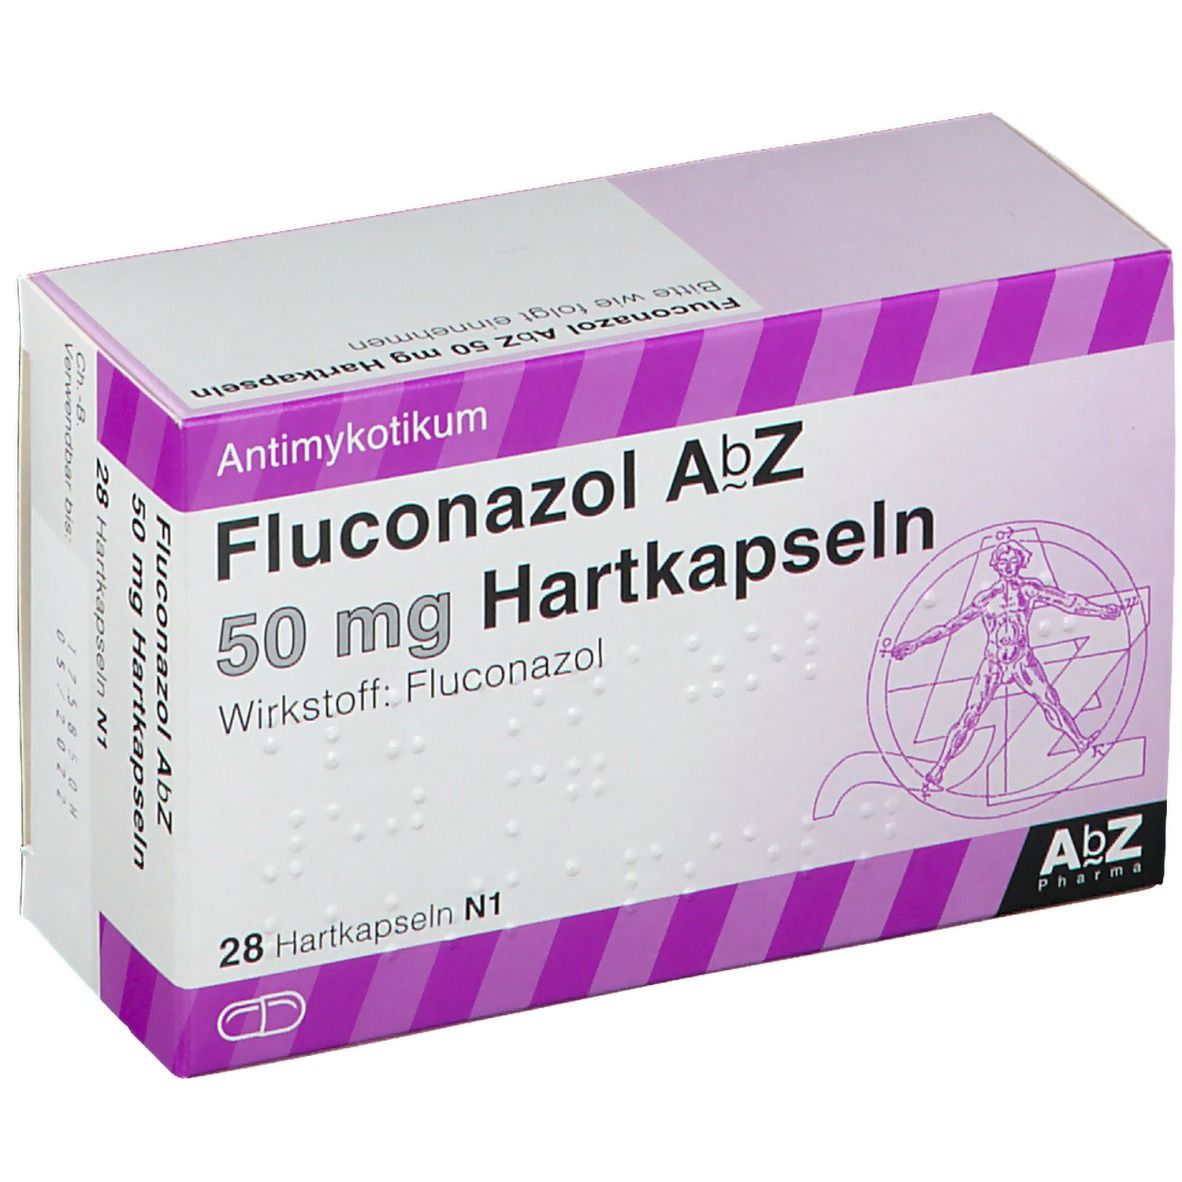 Fluconazol AbZ 50 mg